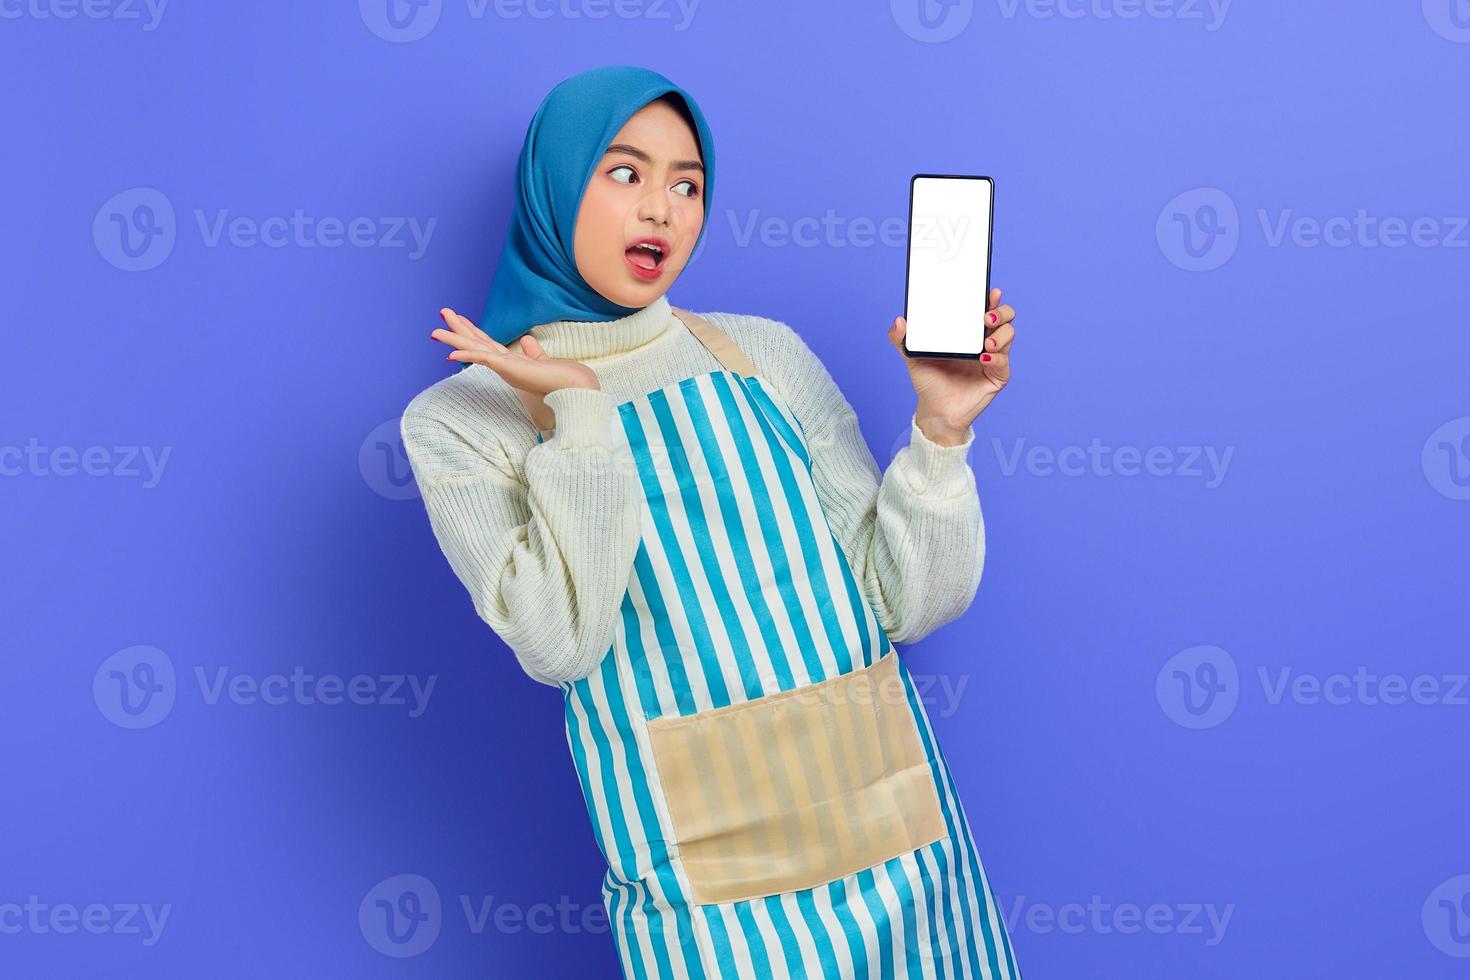 sorprendida joven musulmana asiática usando hijab y delantal sosteniendo un teléfono móvil de pantalla en blanco con la mano aislada en un fondo morado. gente ama de casa concepto de estilo de vida musulmán foto